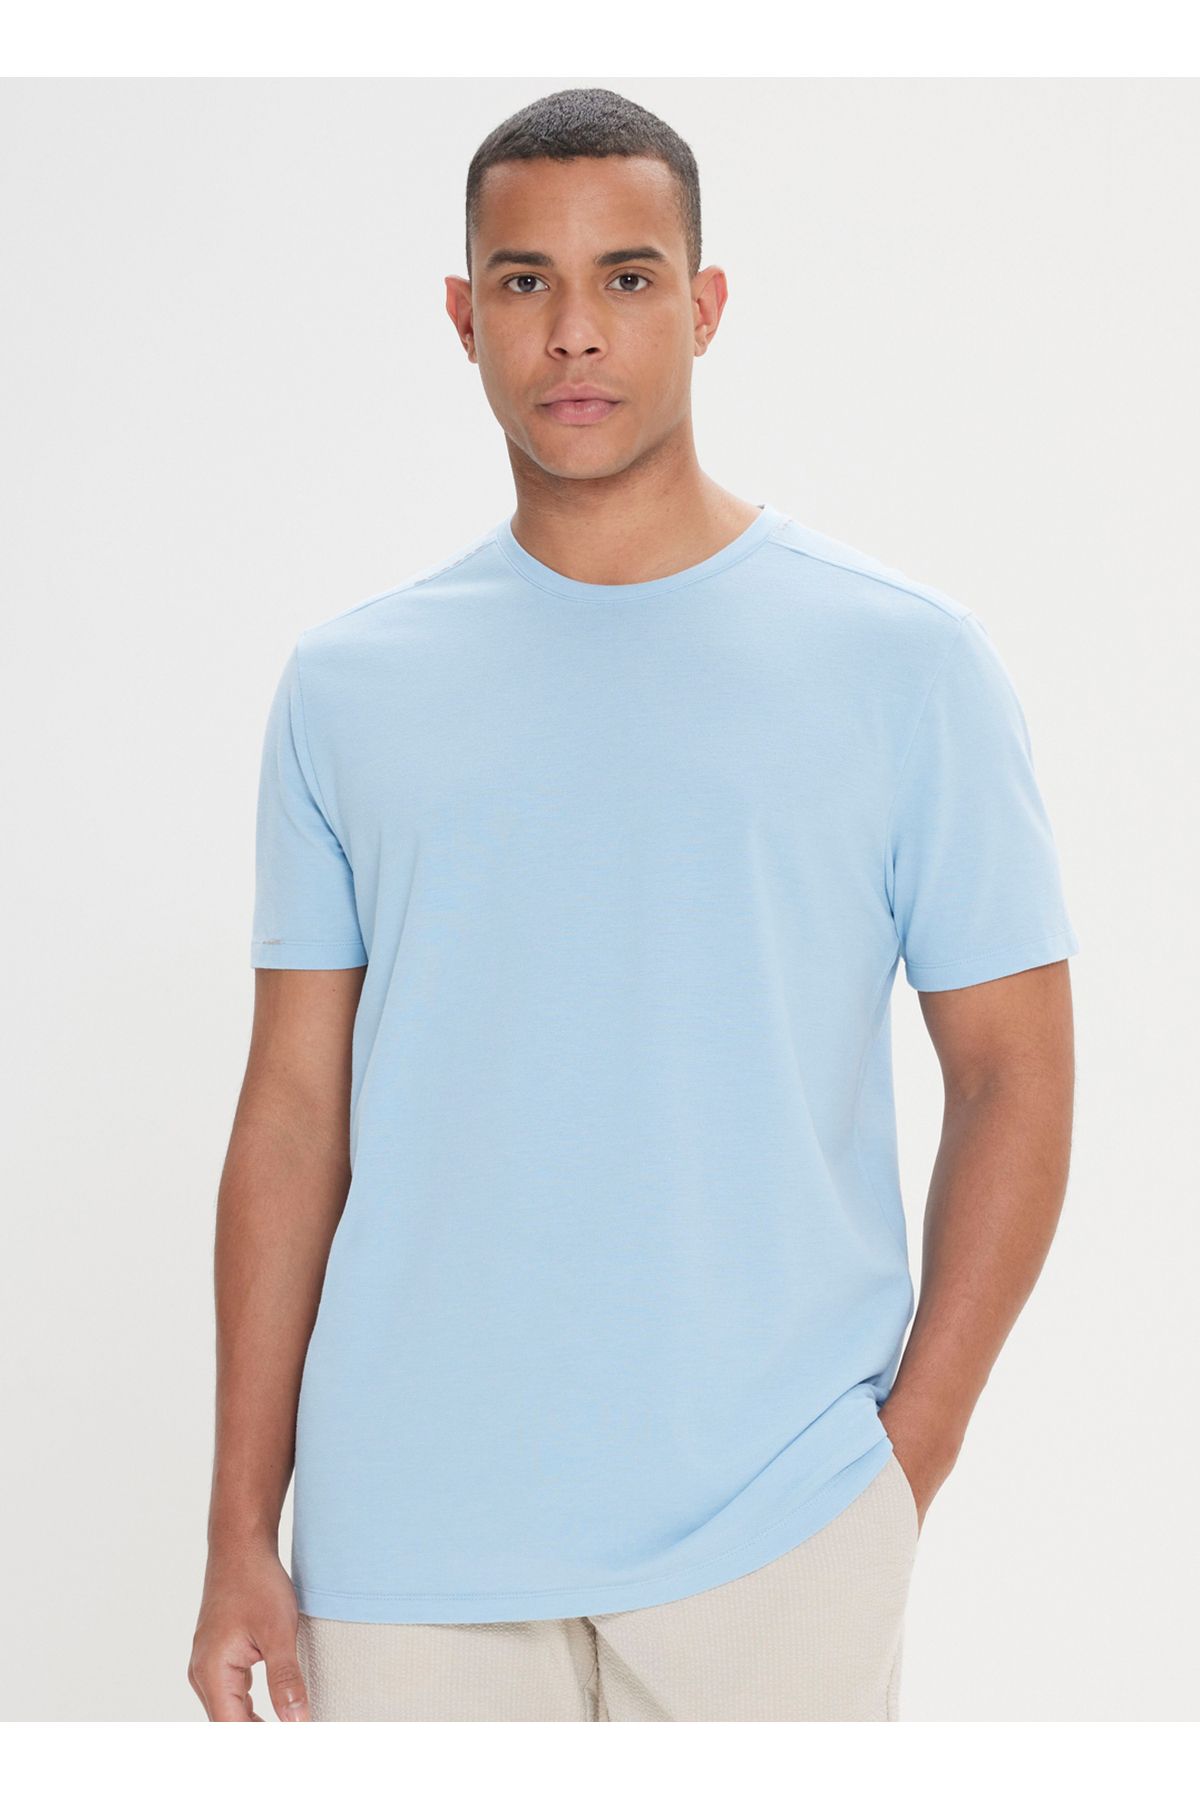 Altınyıldız Classics Altınyıldız Classics Açık Mavi Erkek T-Shirt 4A4824200060